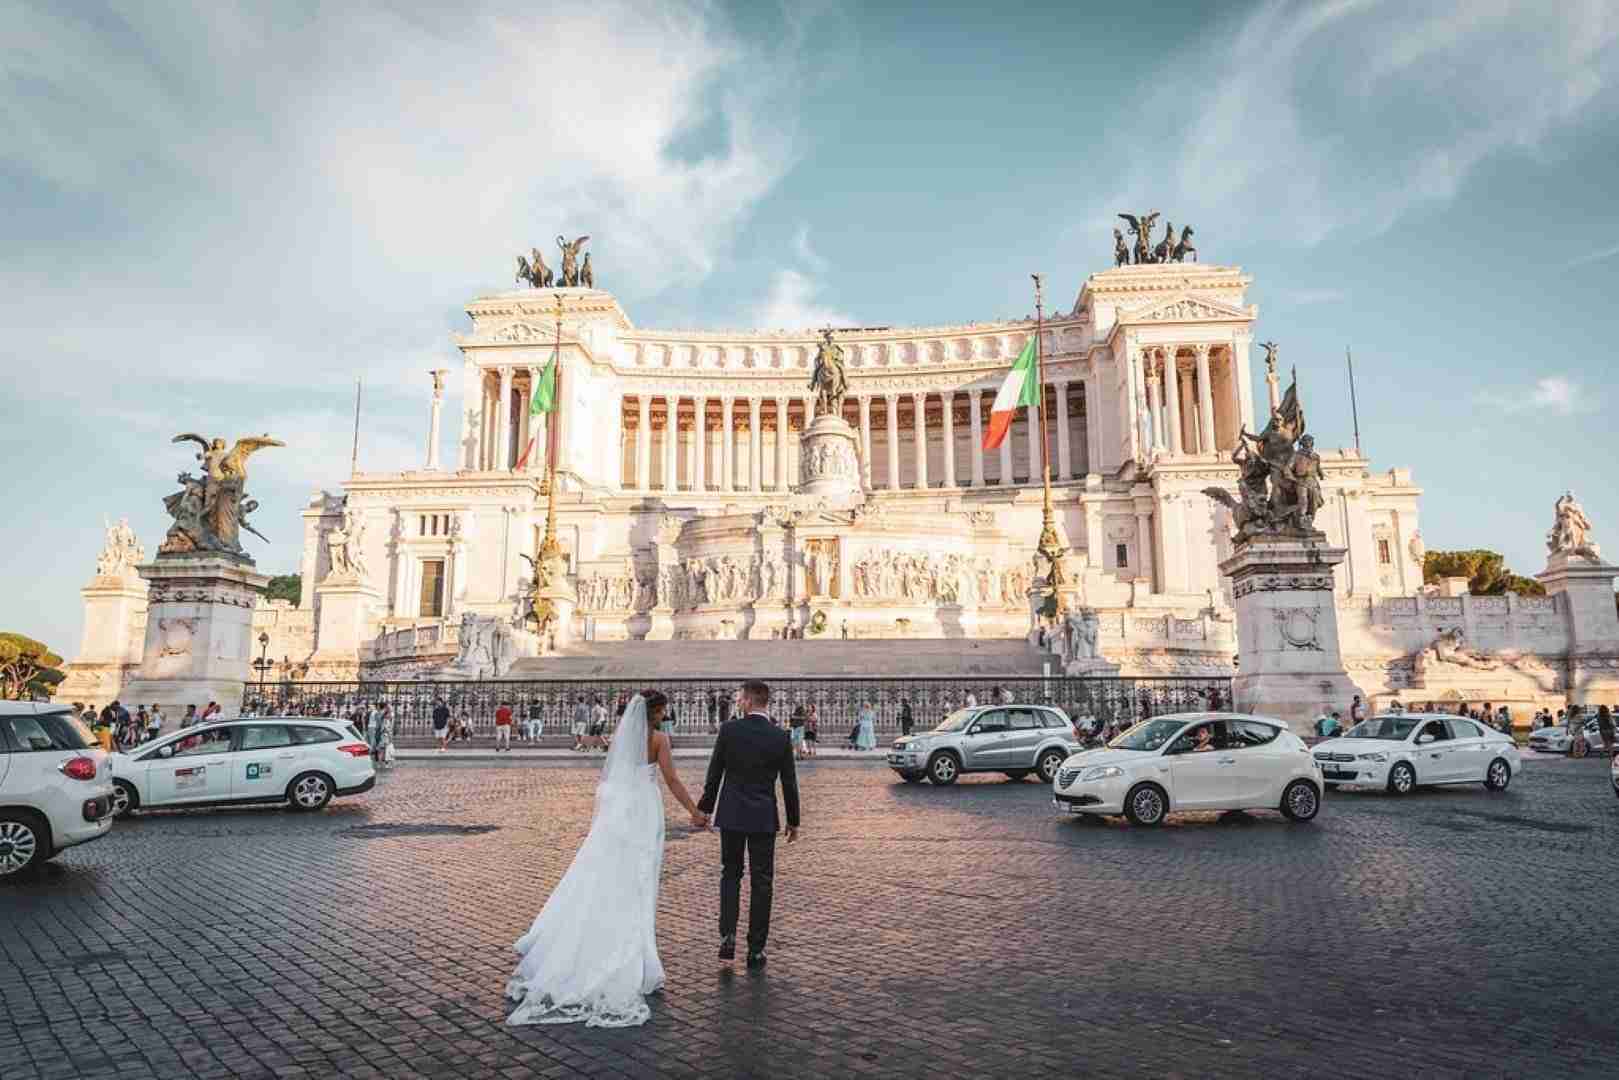 Perché a molti stranieri piace celebrare le nozze in Italia?